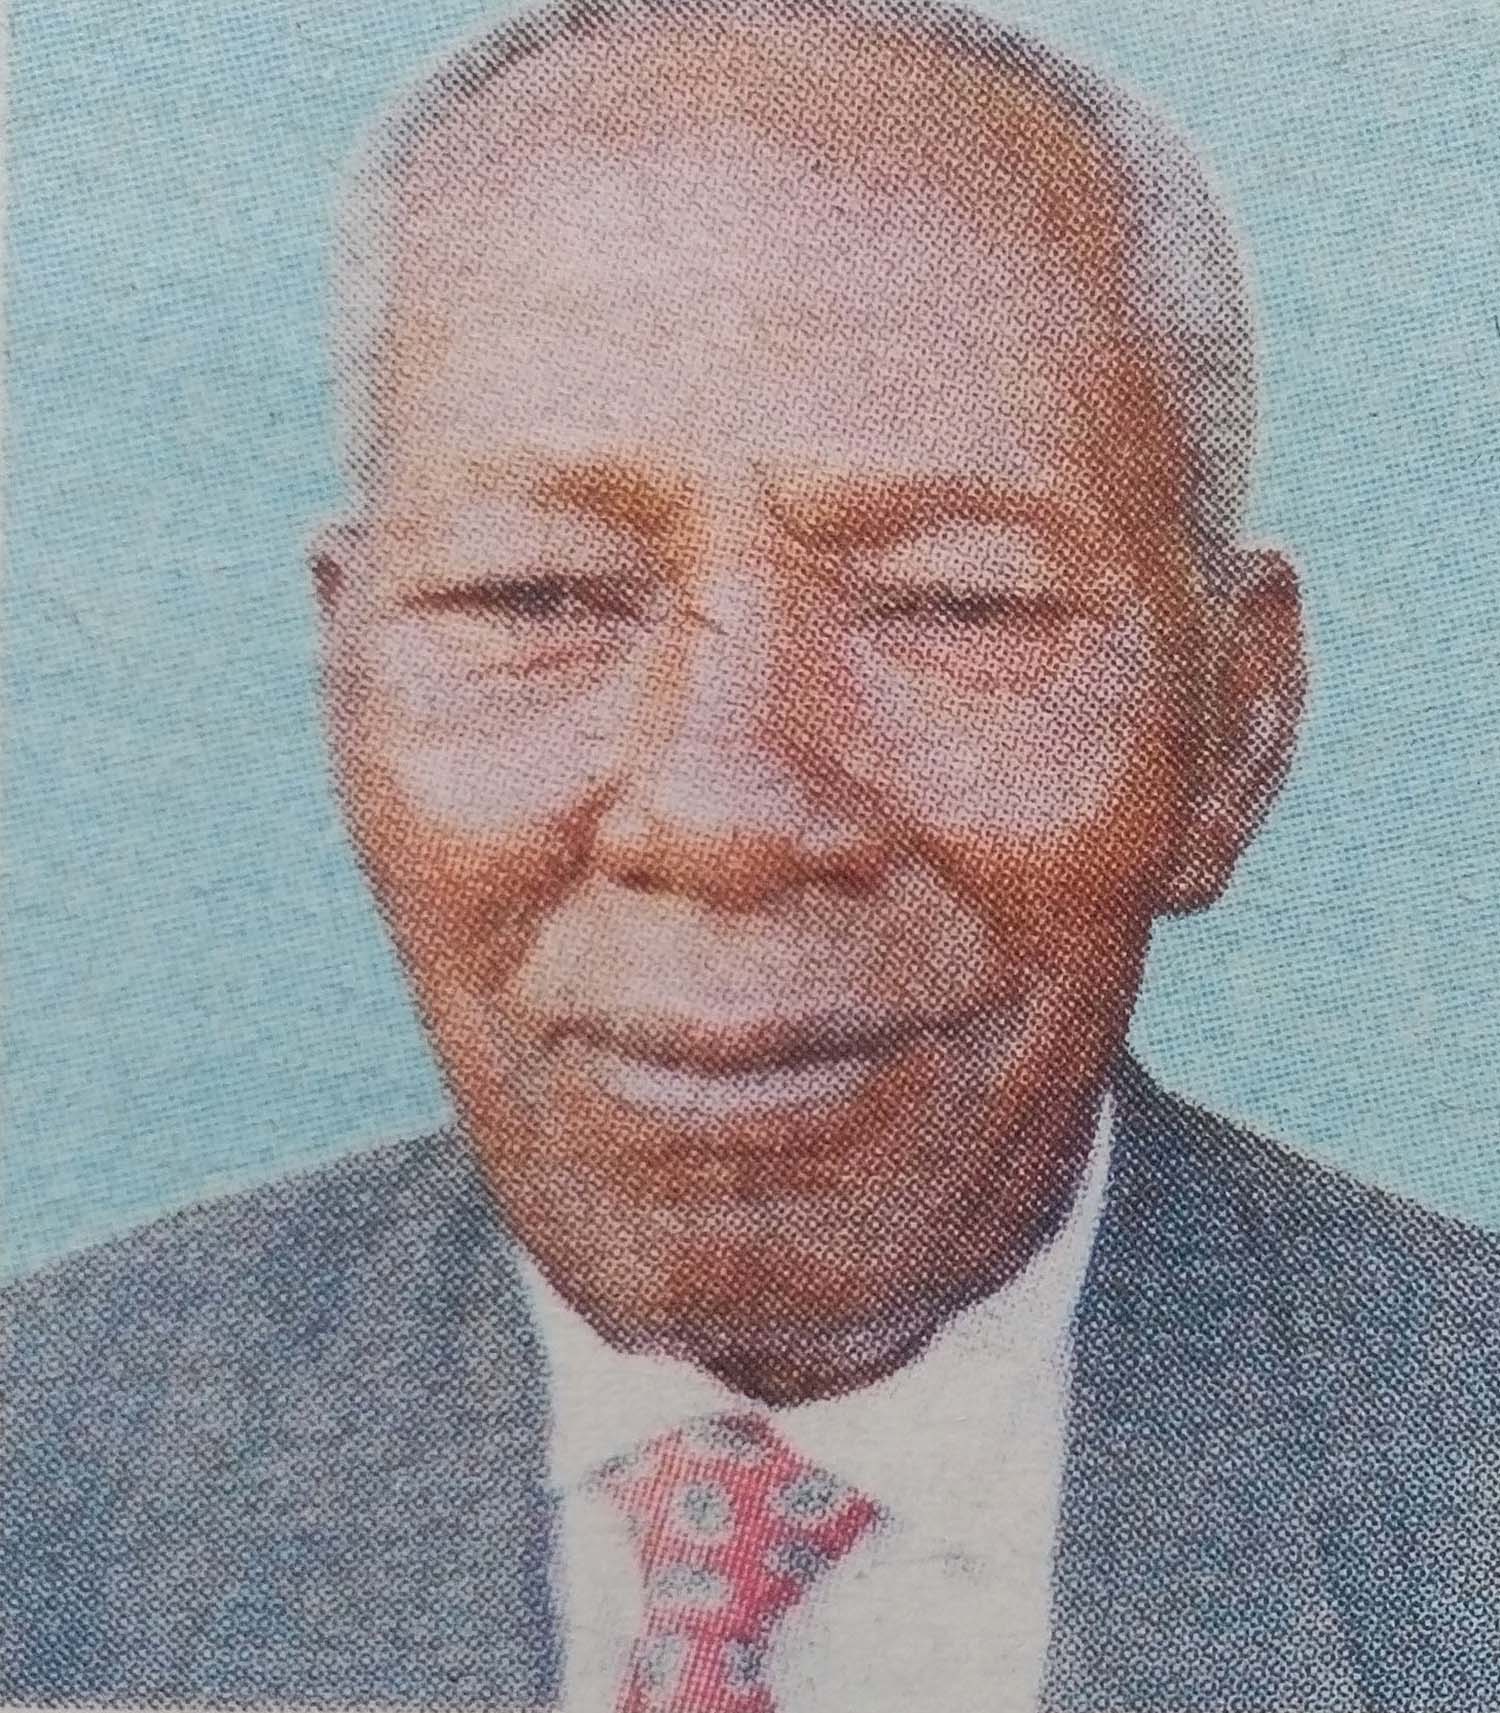 Obituary Image of Evans Mwaura Githuka